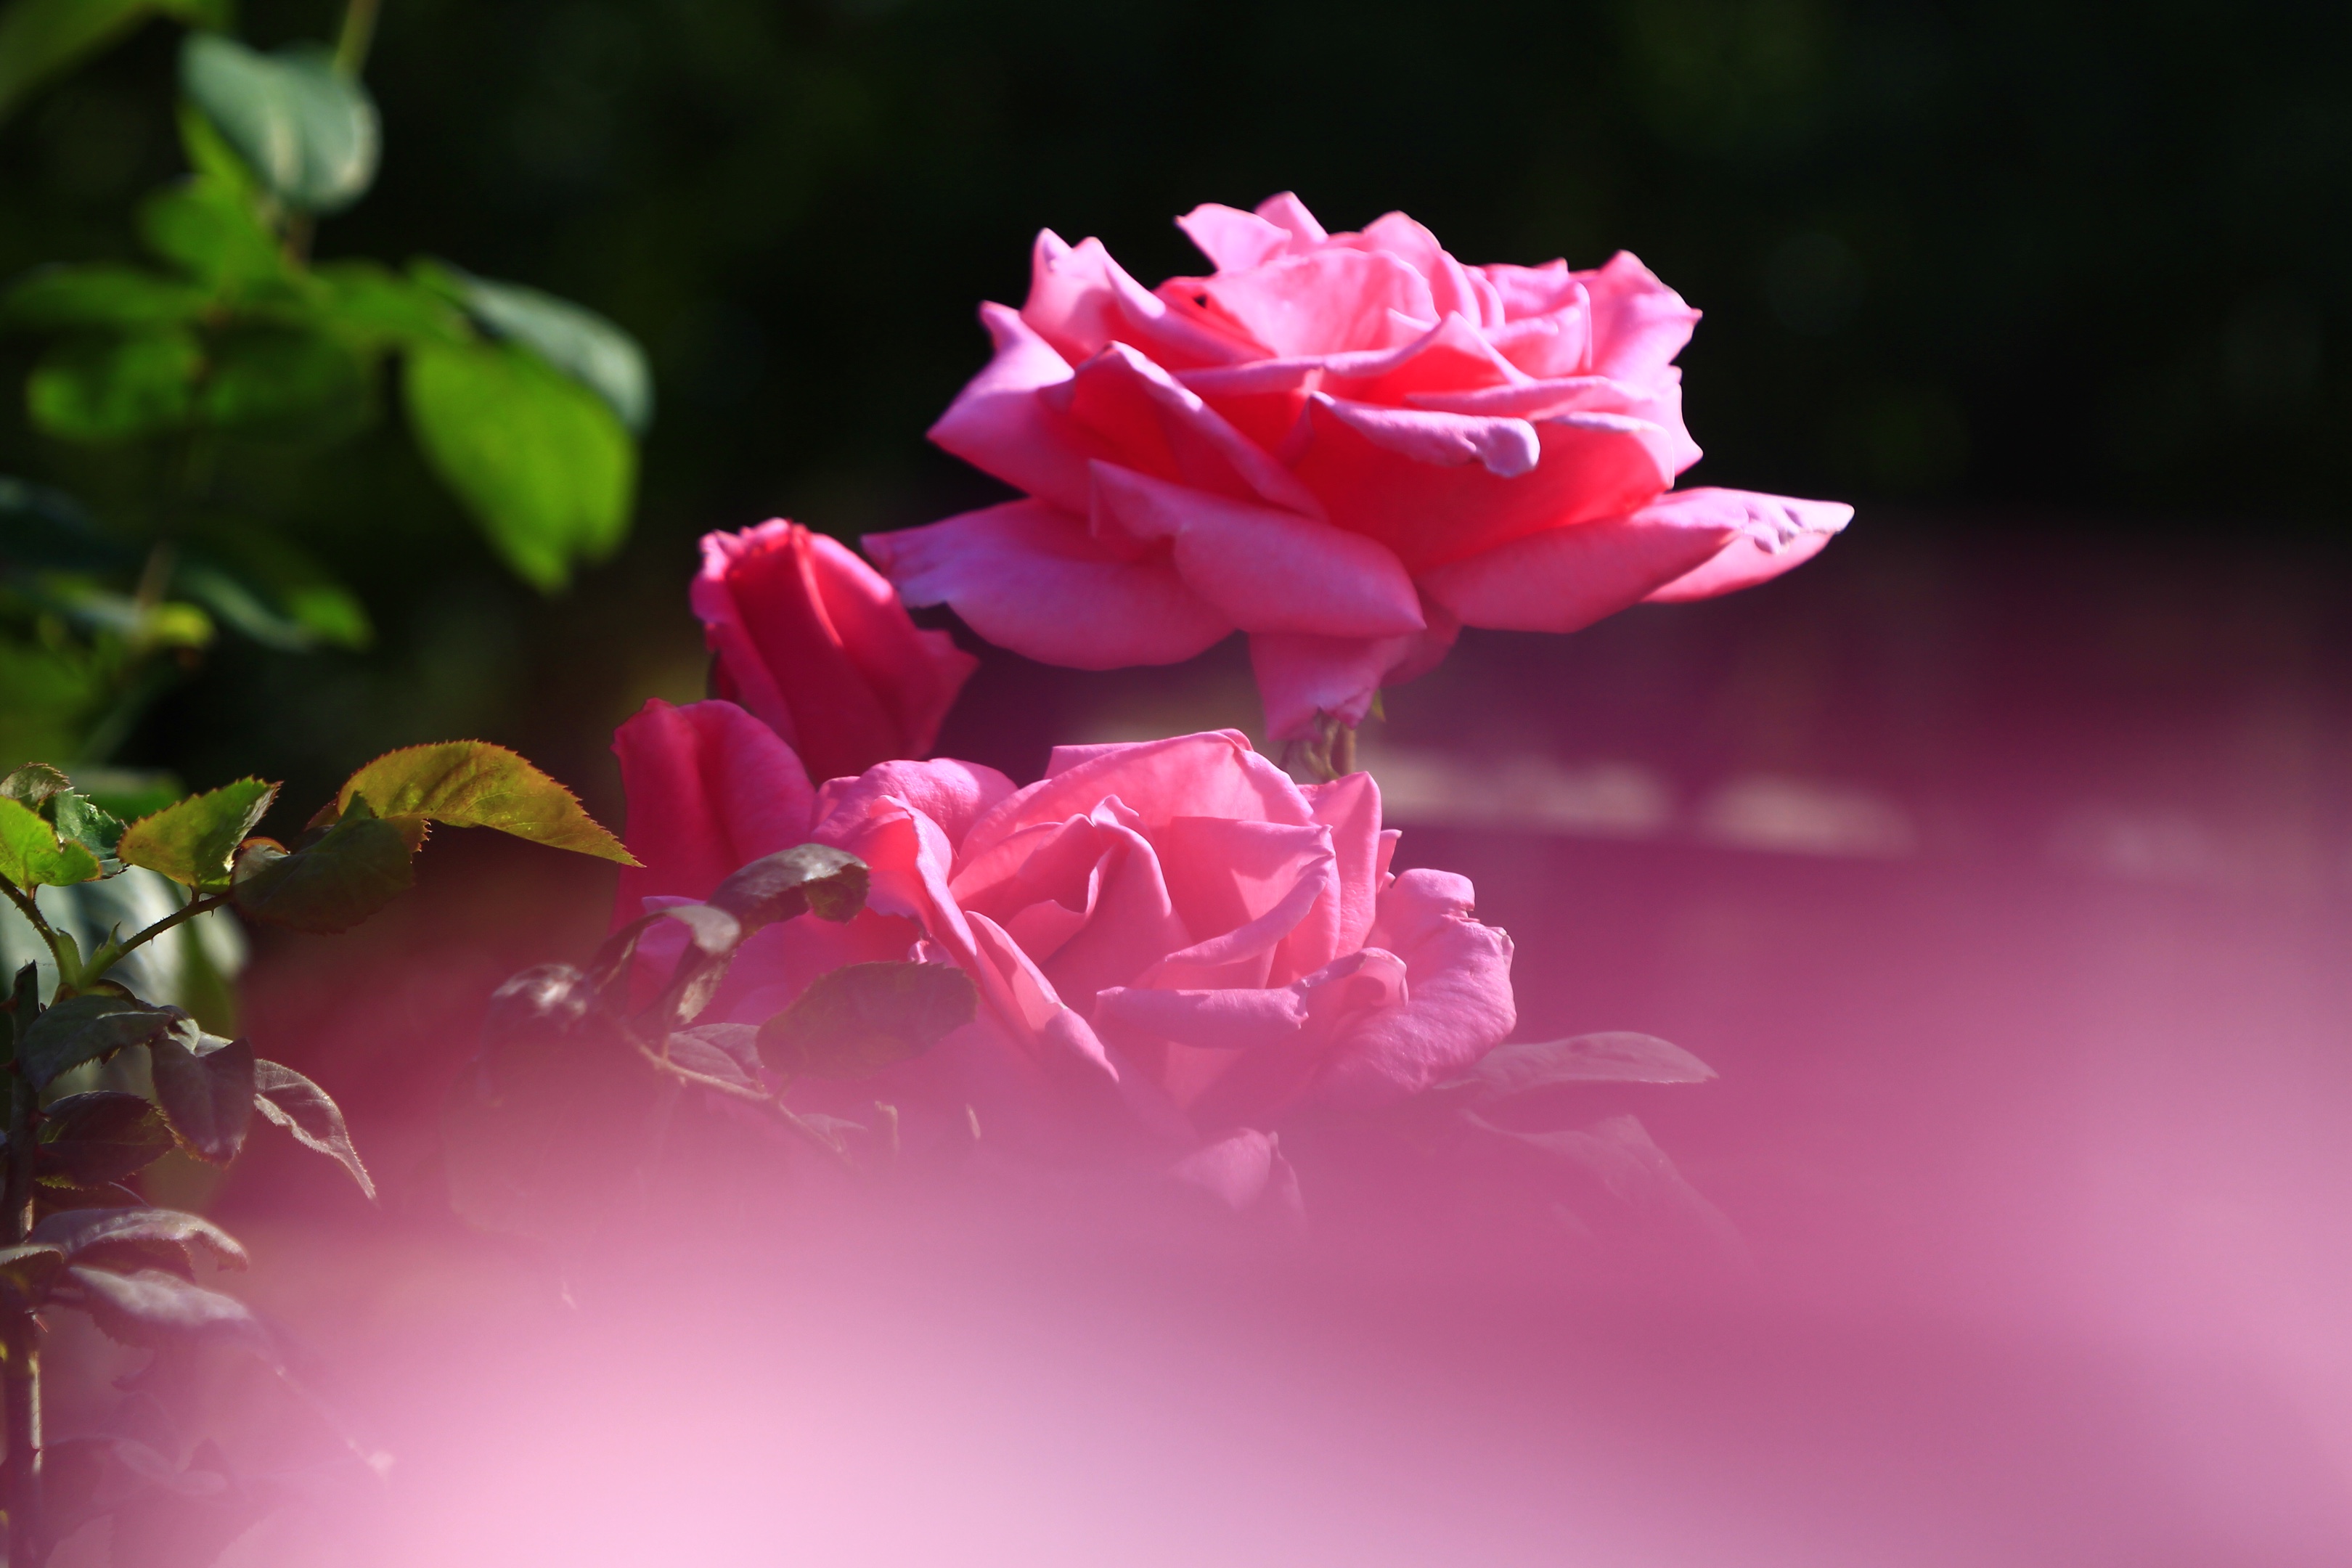 阳光下盛放的玫瑰花(摄影首发)